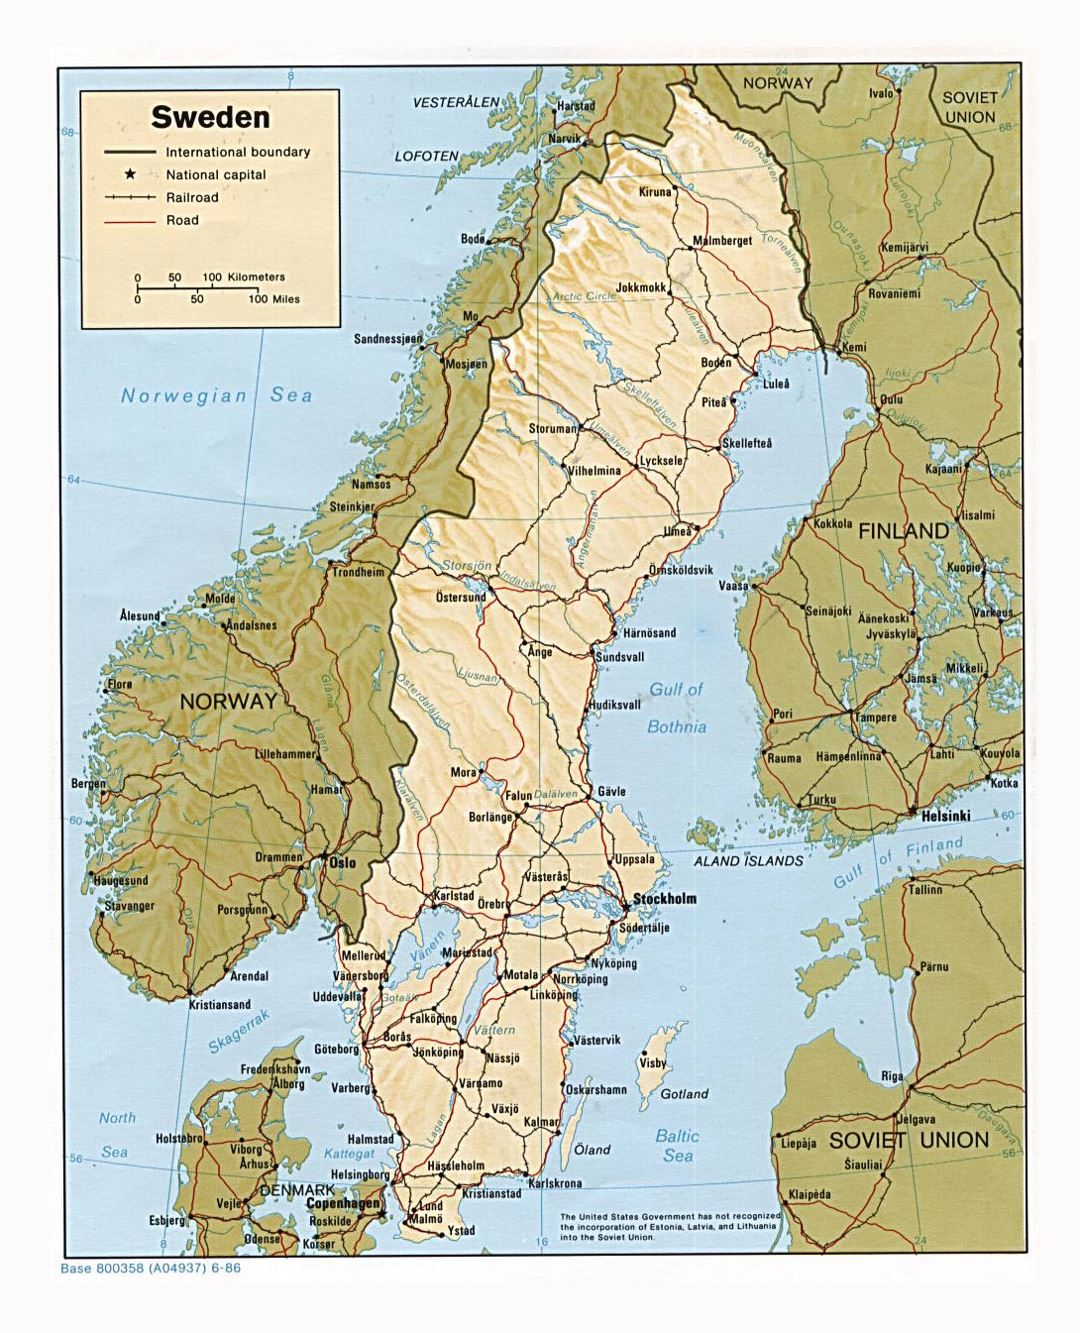 Detallado mapa político de Suecia con relieve, carreteras, ferrocarriles y ciudades principales - 1986